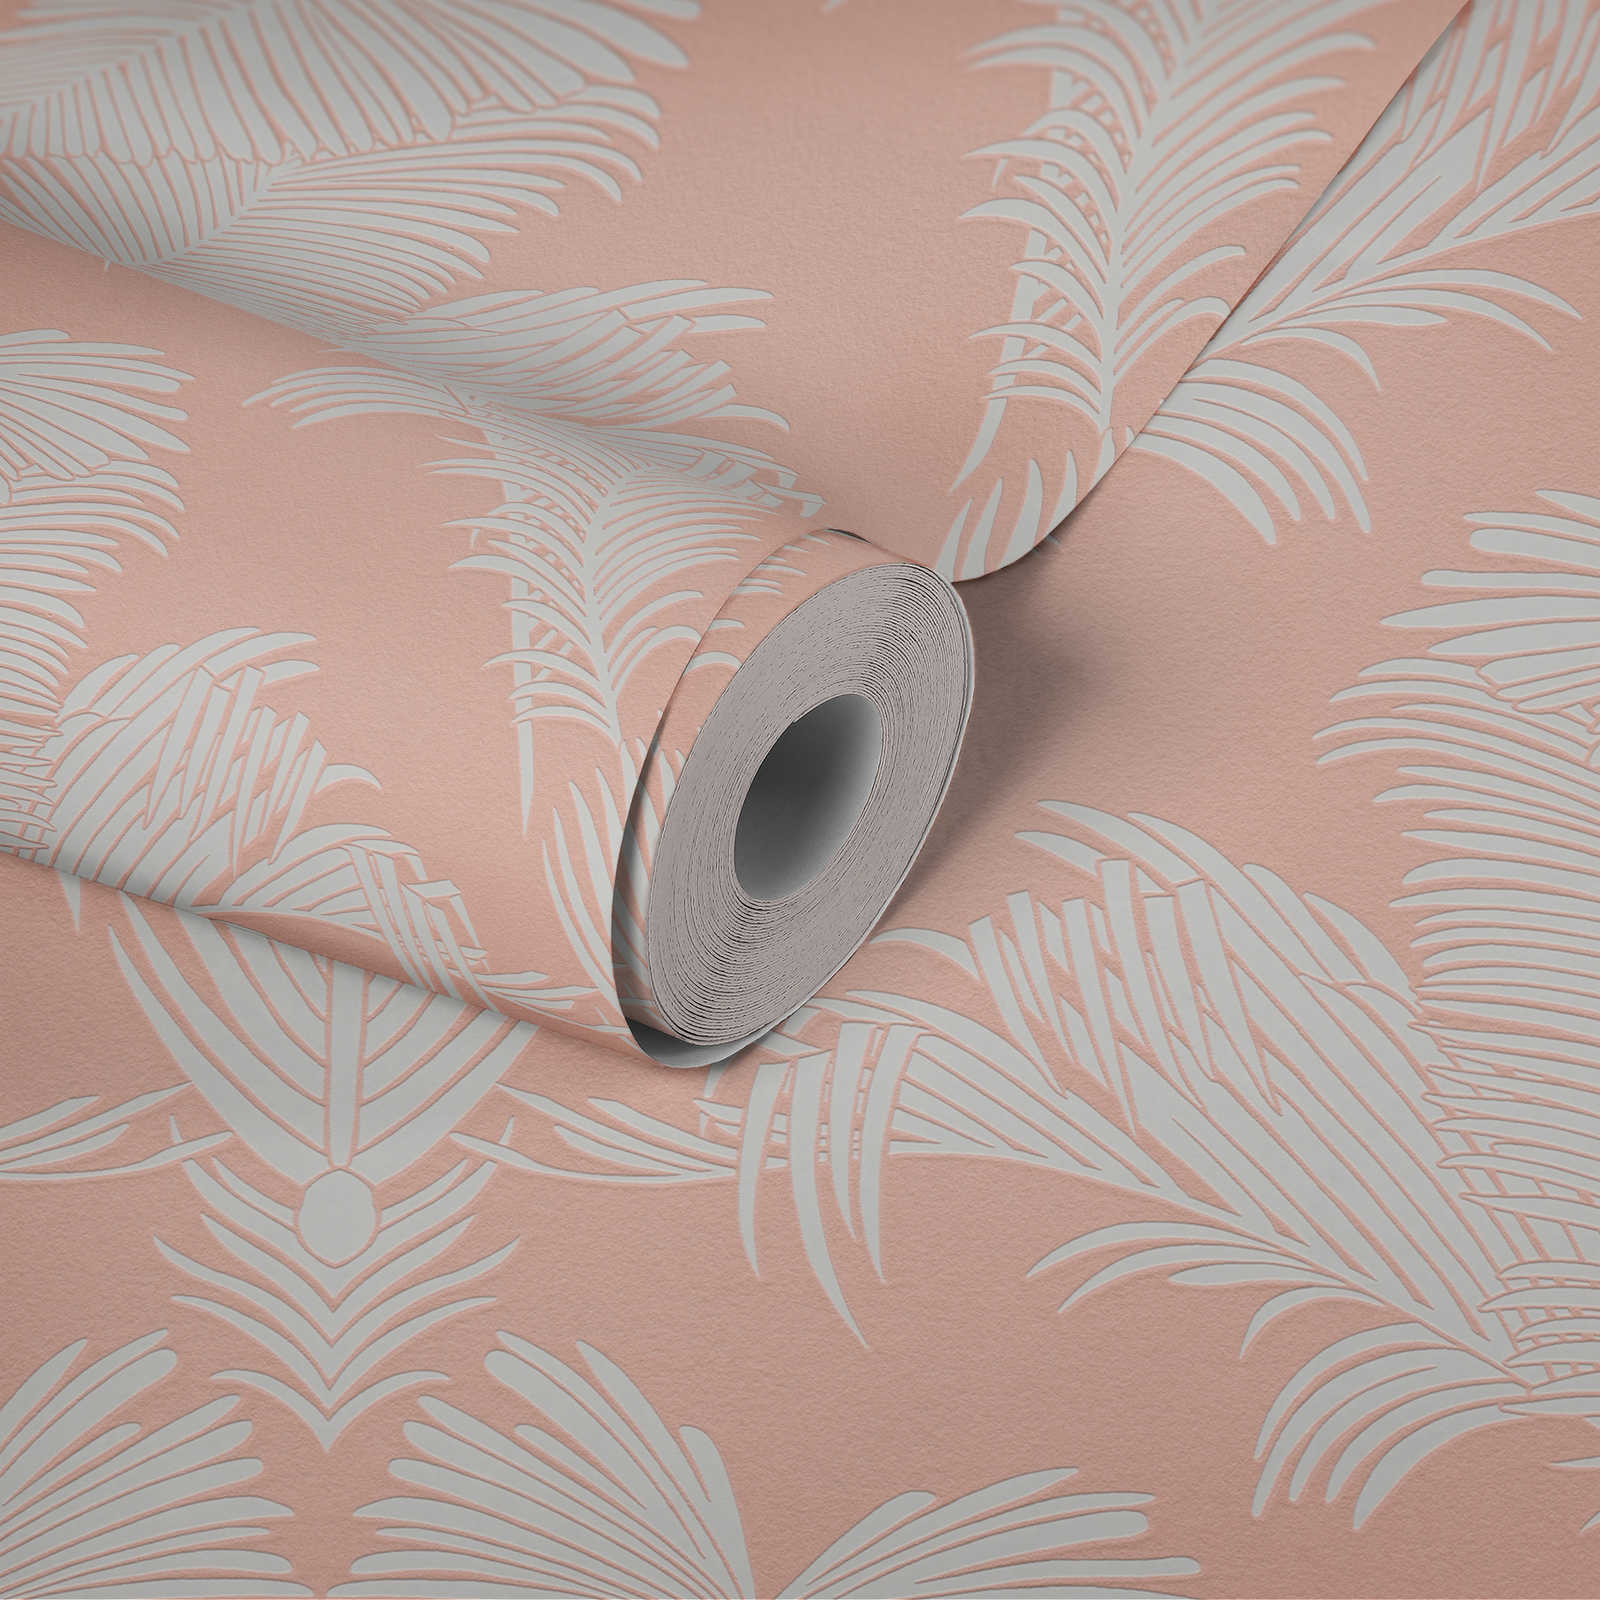             Papel pintado rosa con estampado de hojas de palmera y estructura en relieve - rosa, blanco
        